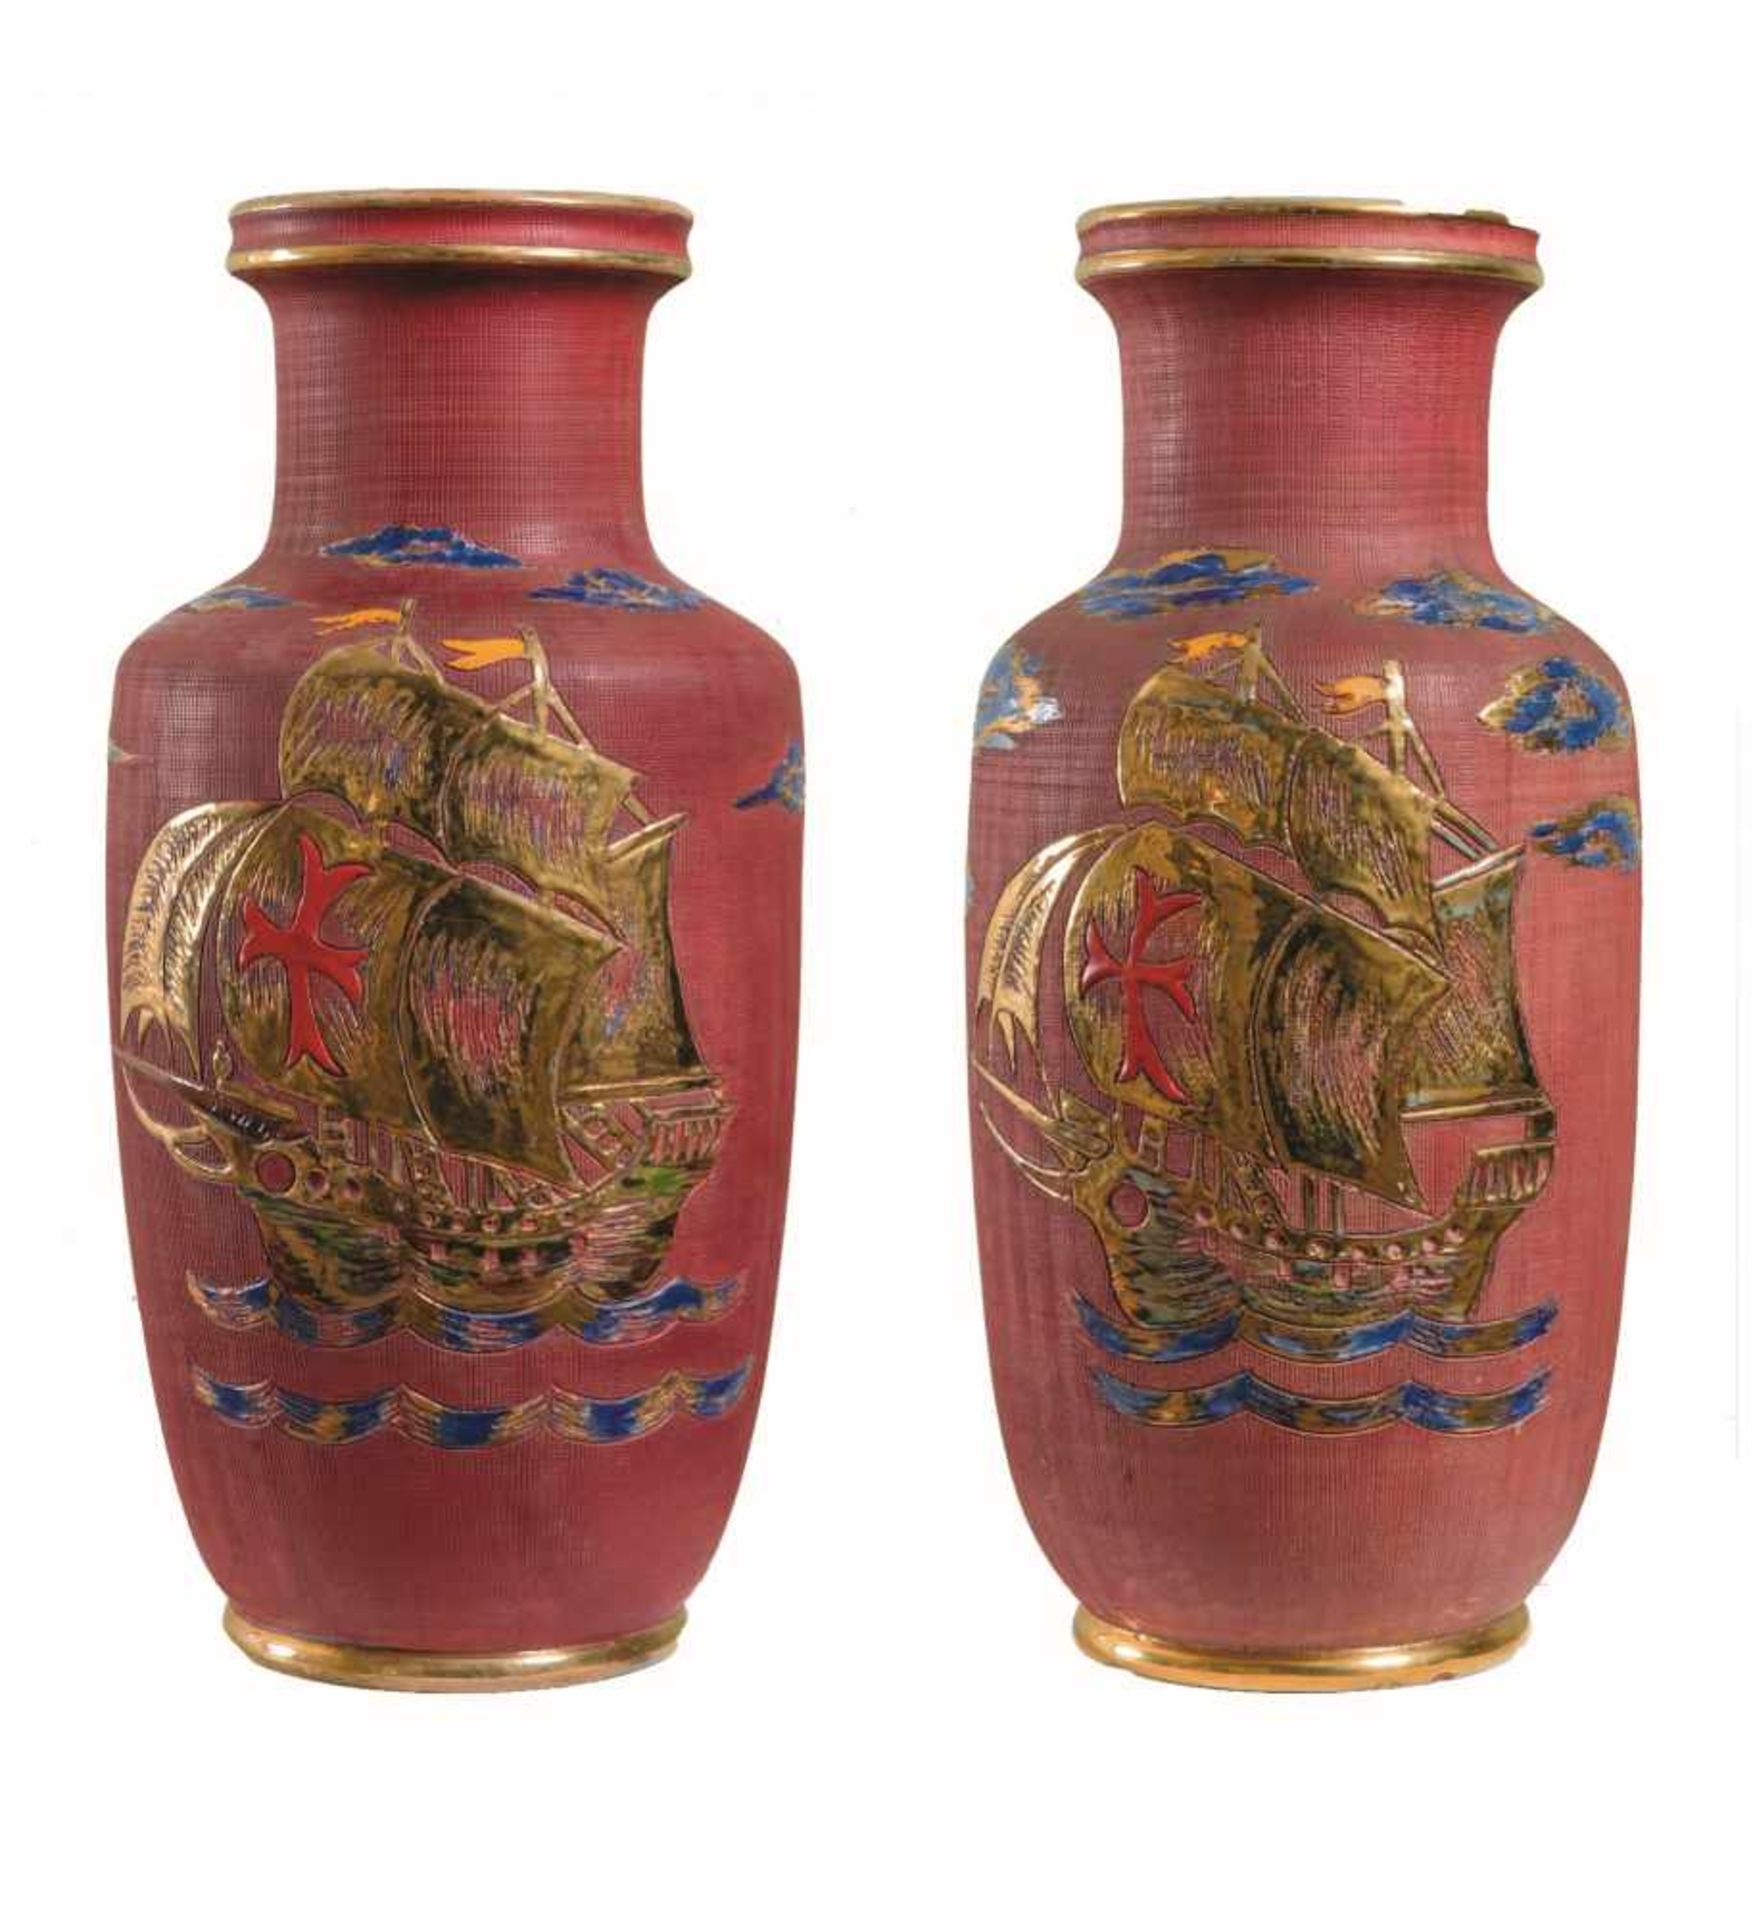 ZACCAGNINI, XX secolo. Coppia di vasi in ceramica policroma raffiguranti velieri. Cm 52, diametro: